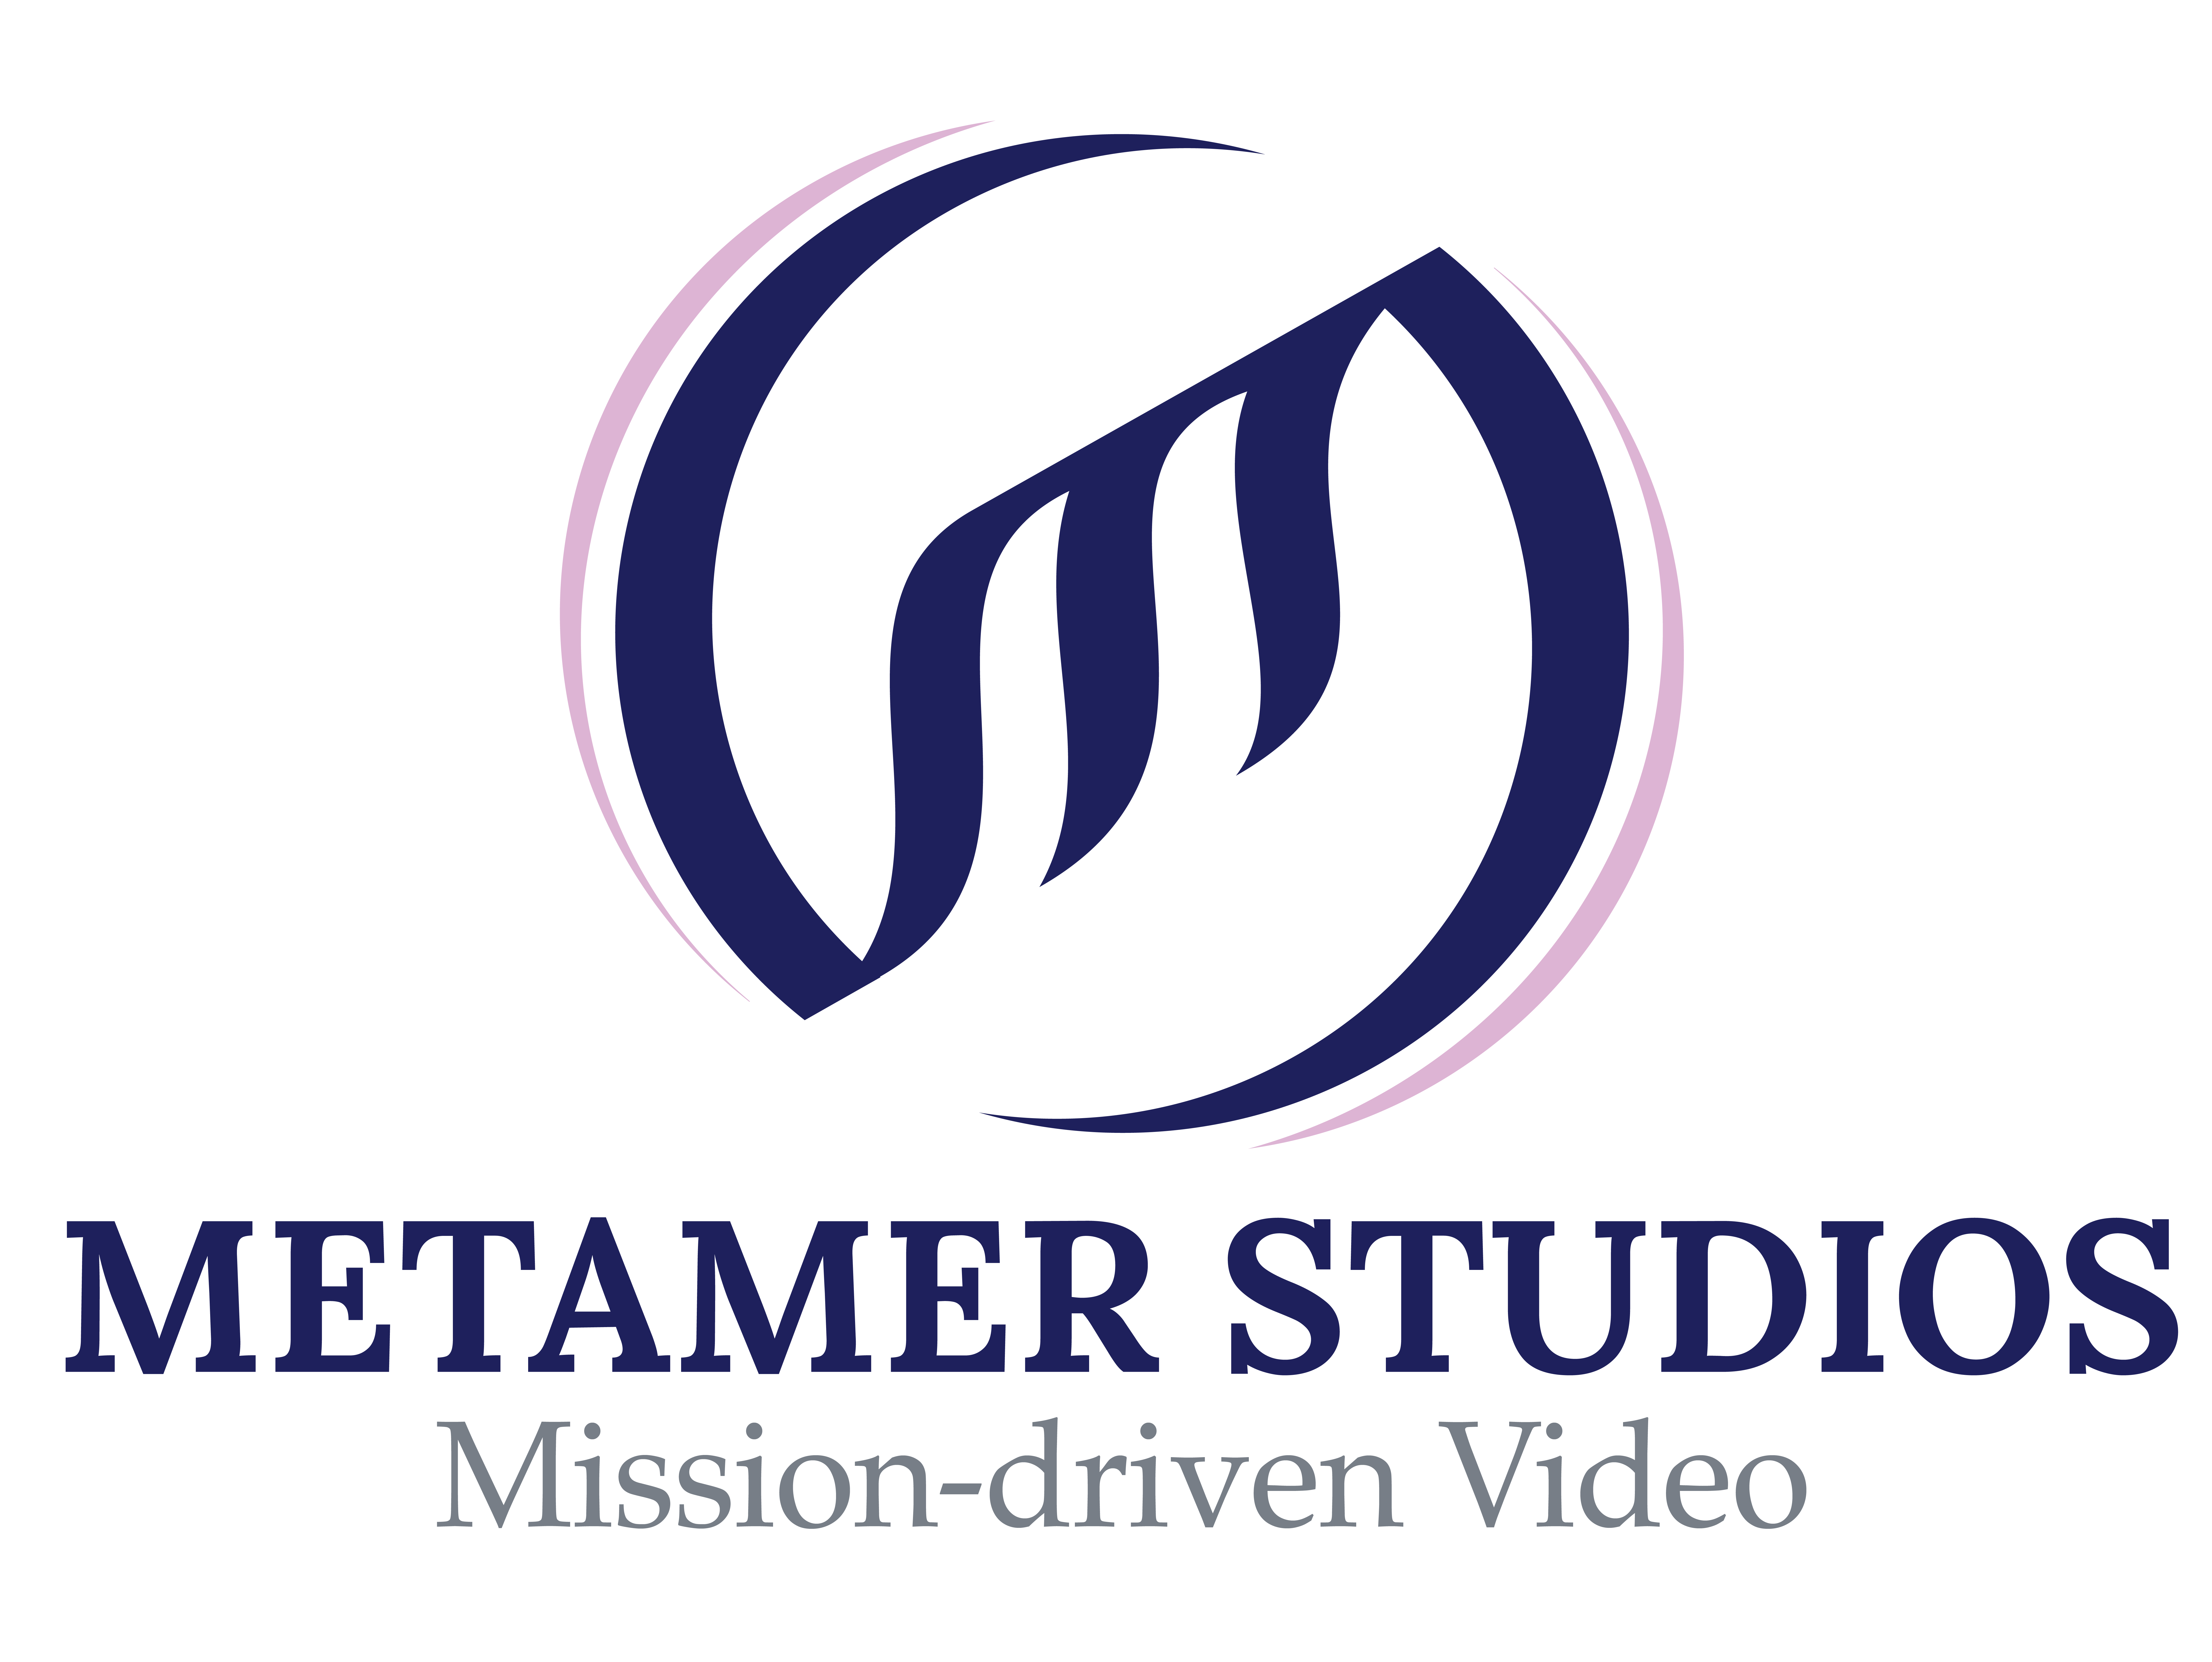 Metamer Studios